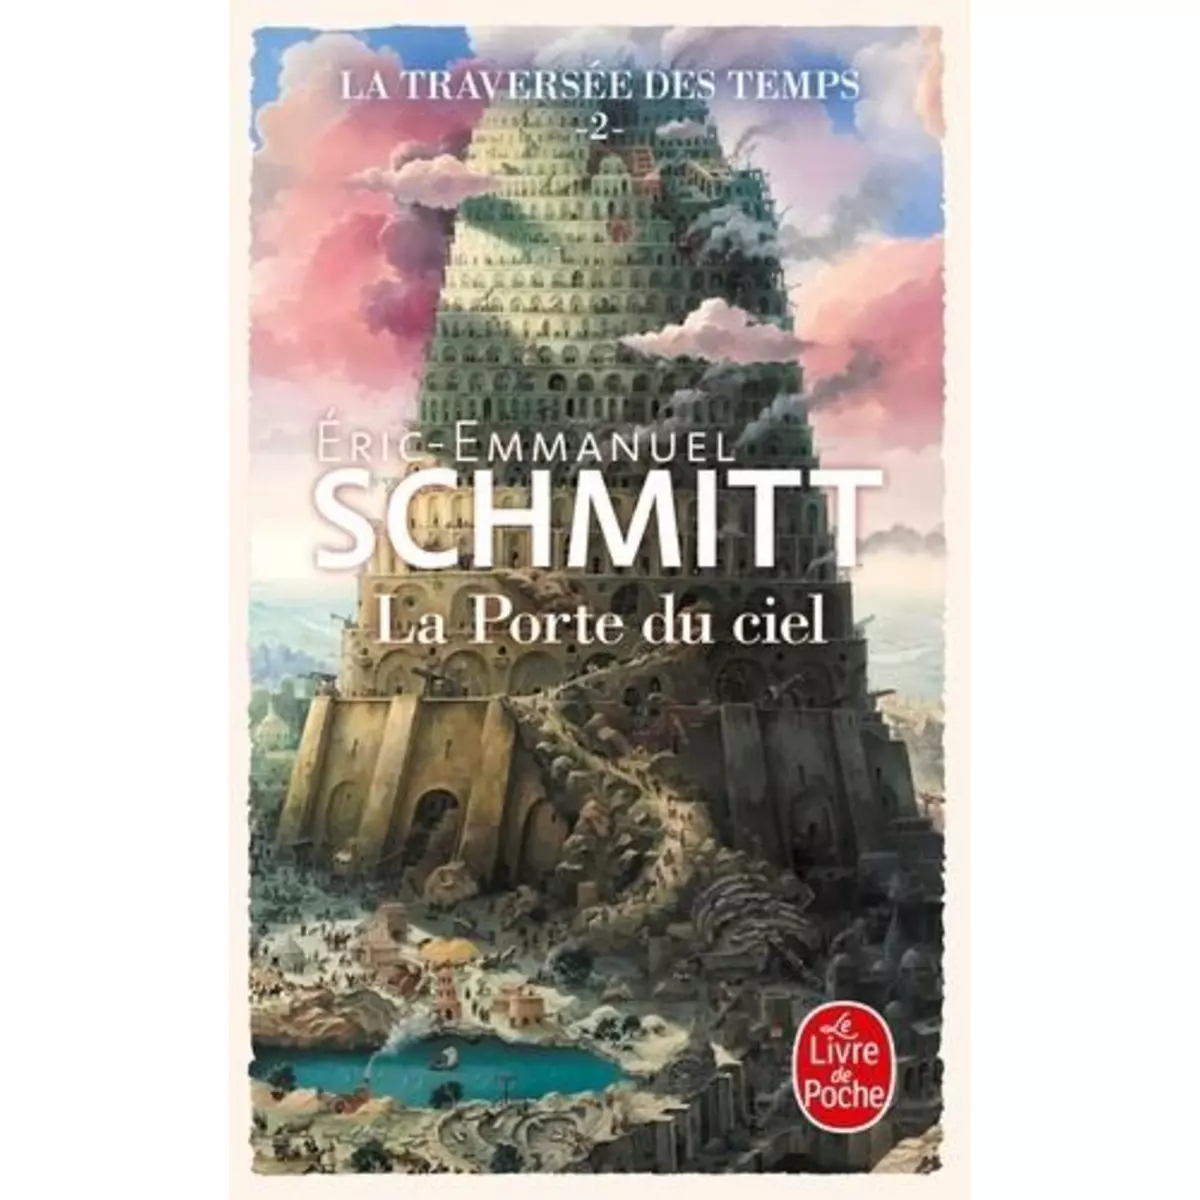  LA TRAVERSEE DES TEMPS TOME 2 : LA PORTE DU CIEL, Schmitt Eric-Emmanuel